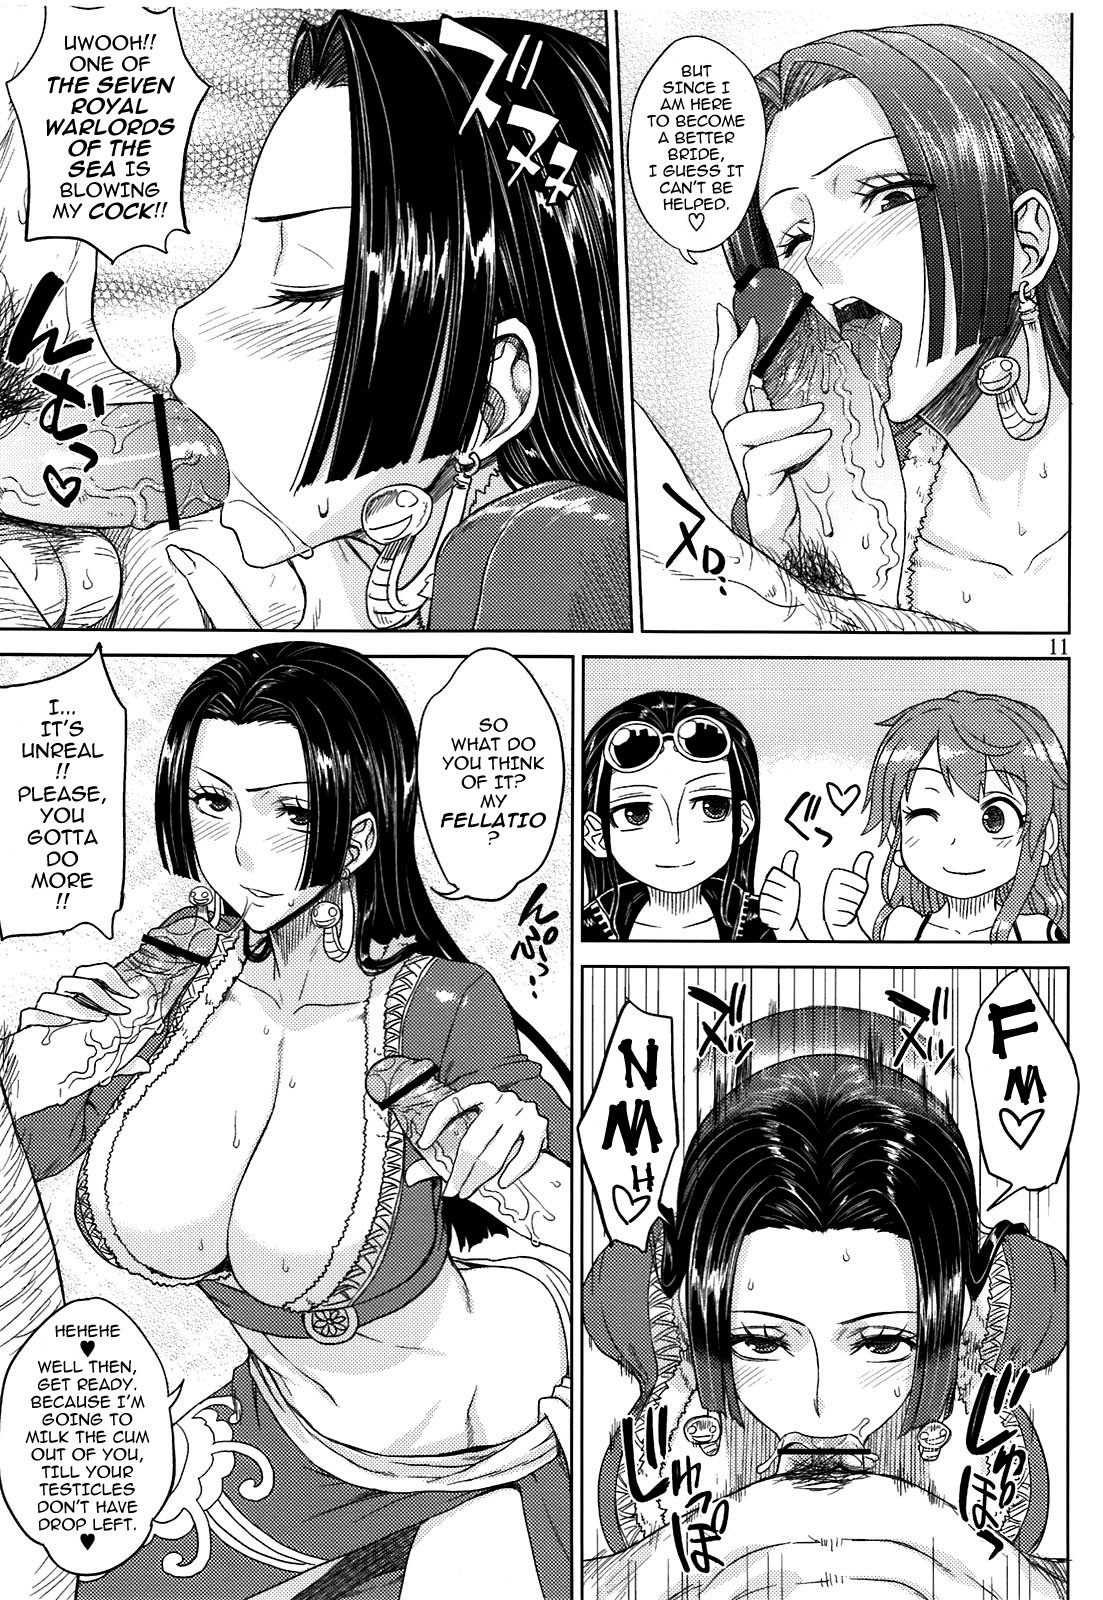 comics-xxx-porn:  ah-manga:     (Denki Shougun) MEROMERO GIRLS (One Piece) part 1part